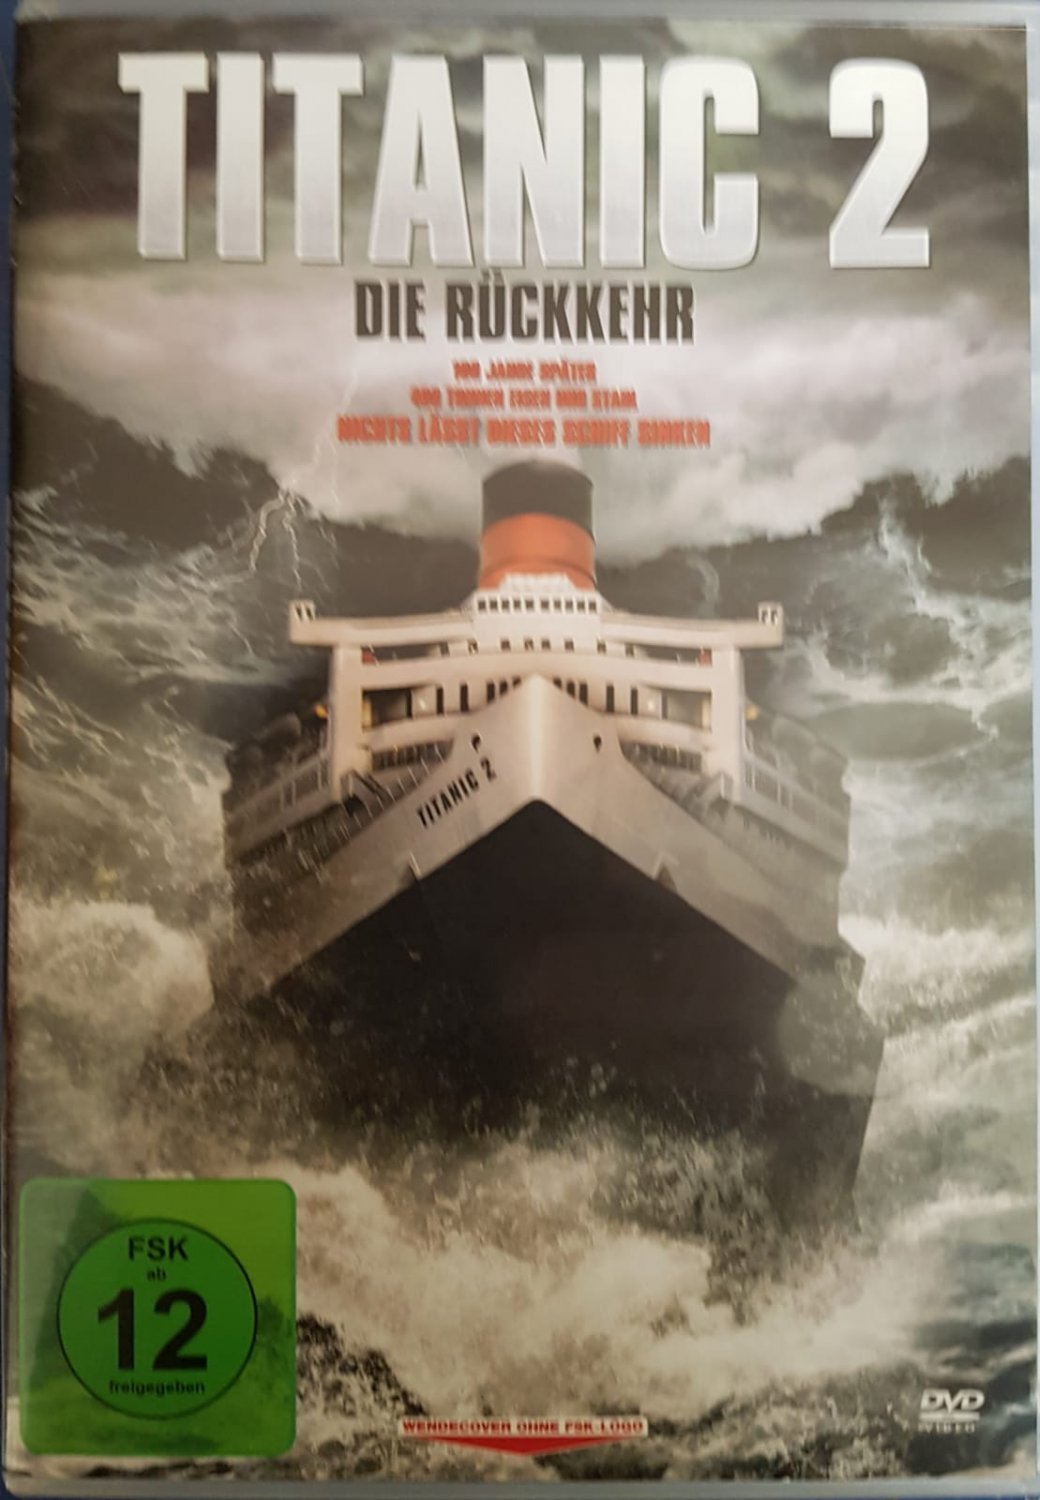 Mathis Egomania Hunger titanic 2 dvd Wandern Bauernhof Hypothese